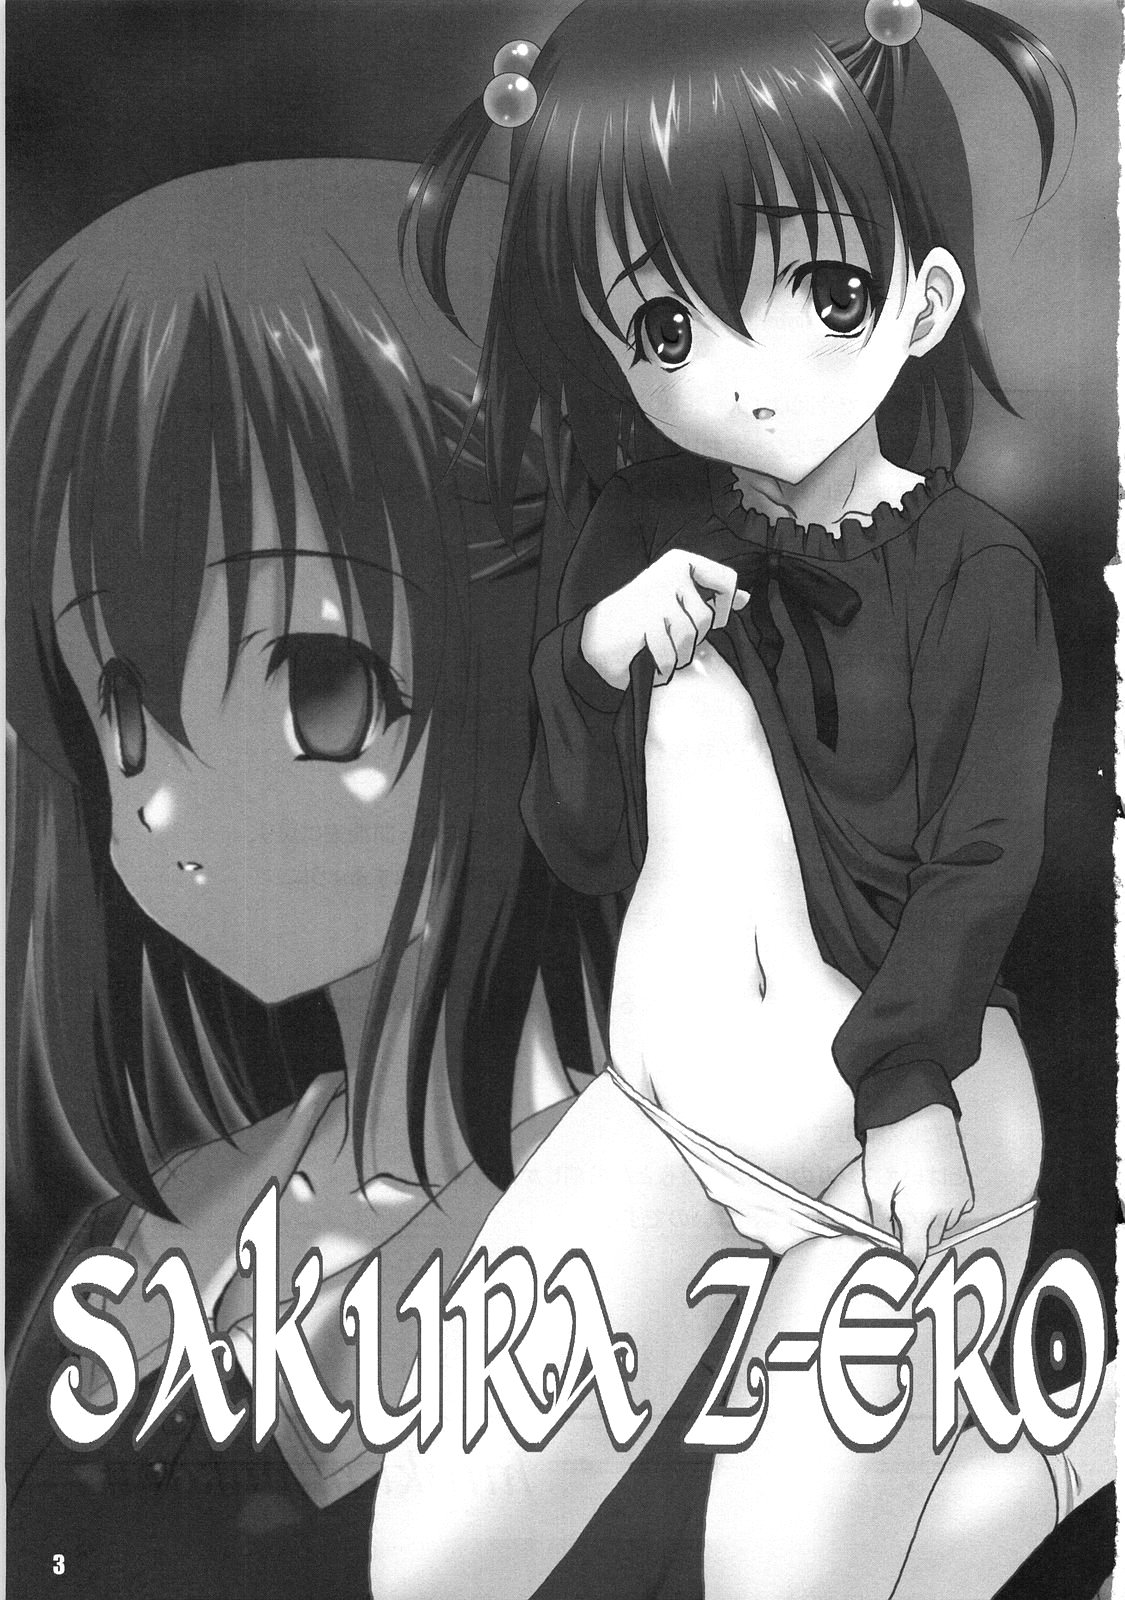 [EXtage (水上広樹)] SAKURA Z-ERO EXtra stage vol.22 (Fate/Zero)